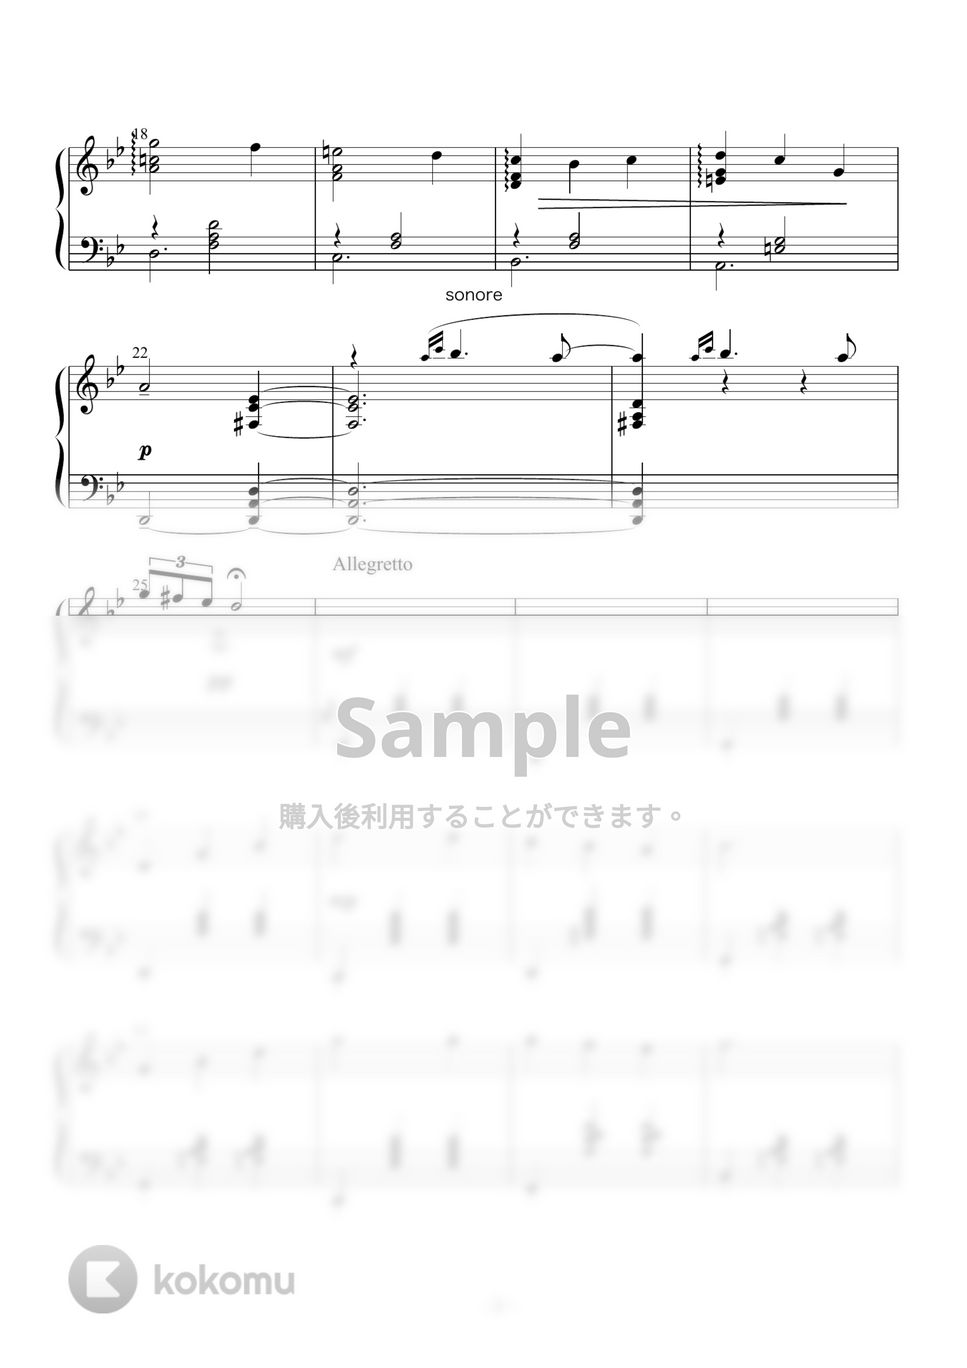 久石譲 - 人生のメリーゴーランド by Azure Piano